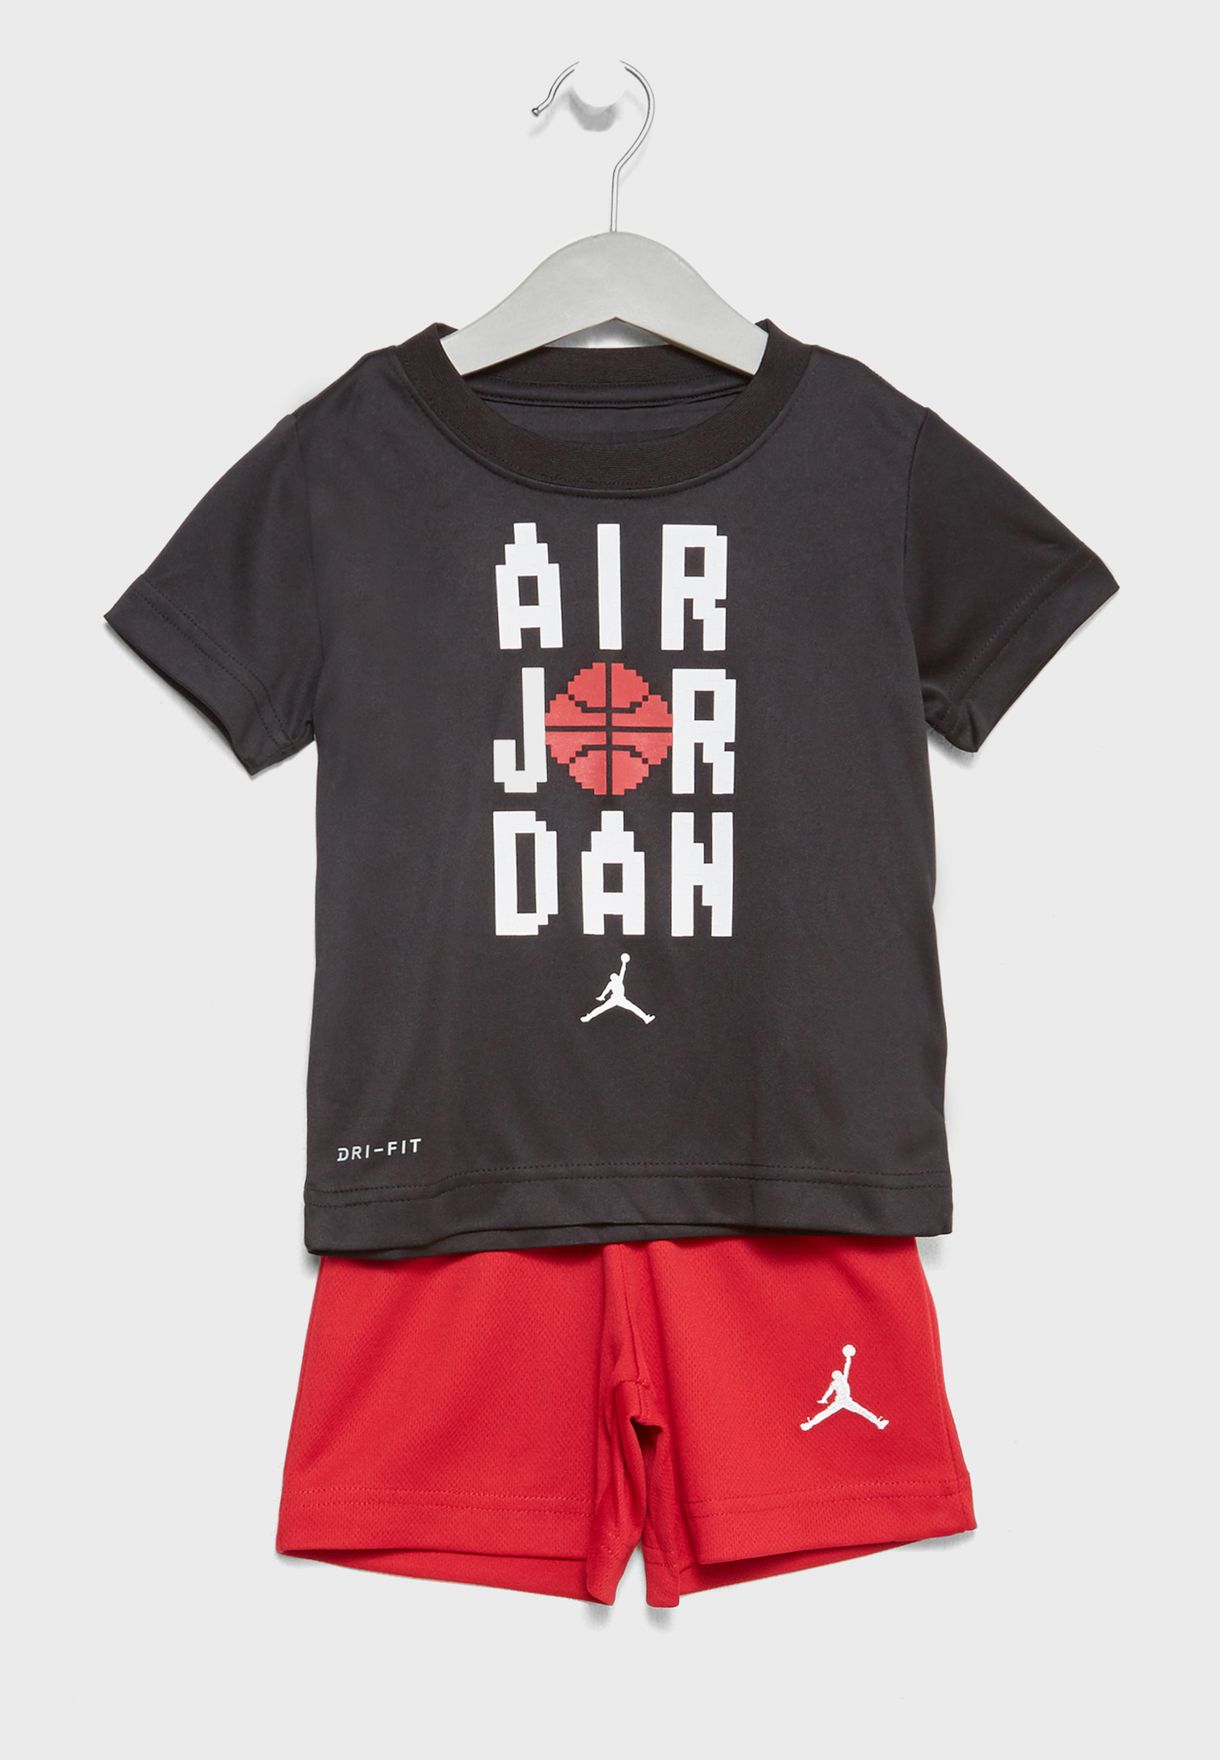 jordan shirt and shorts set